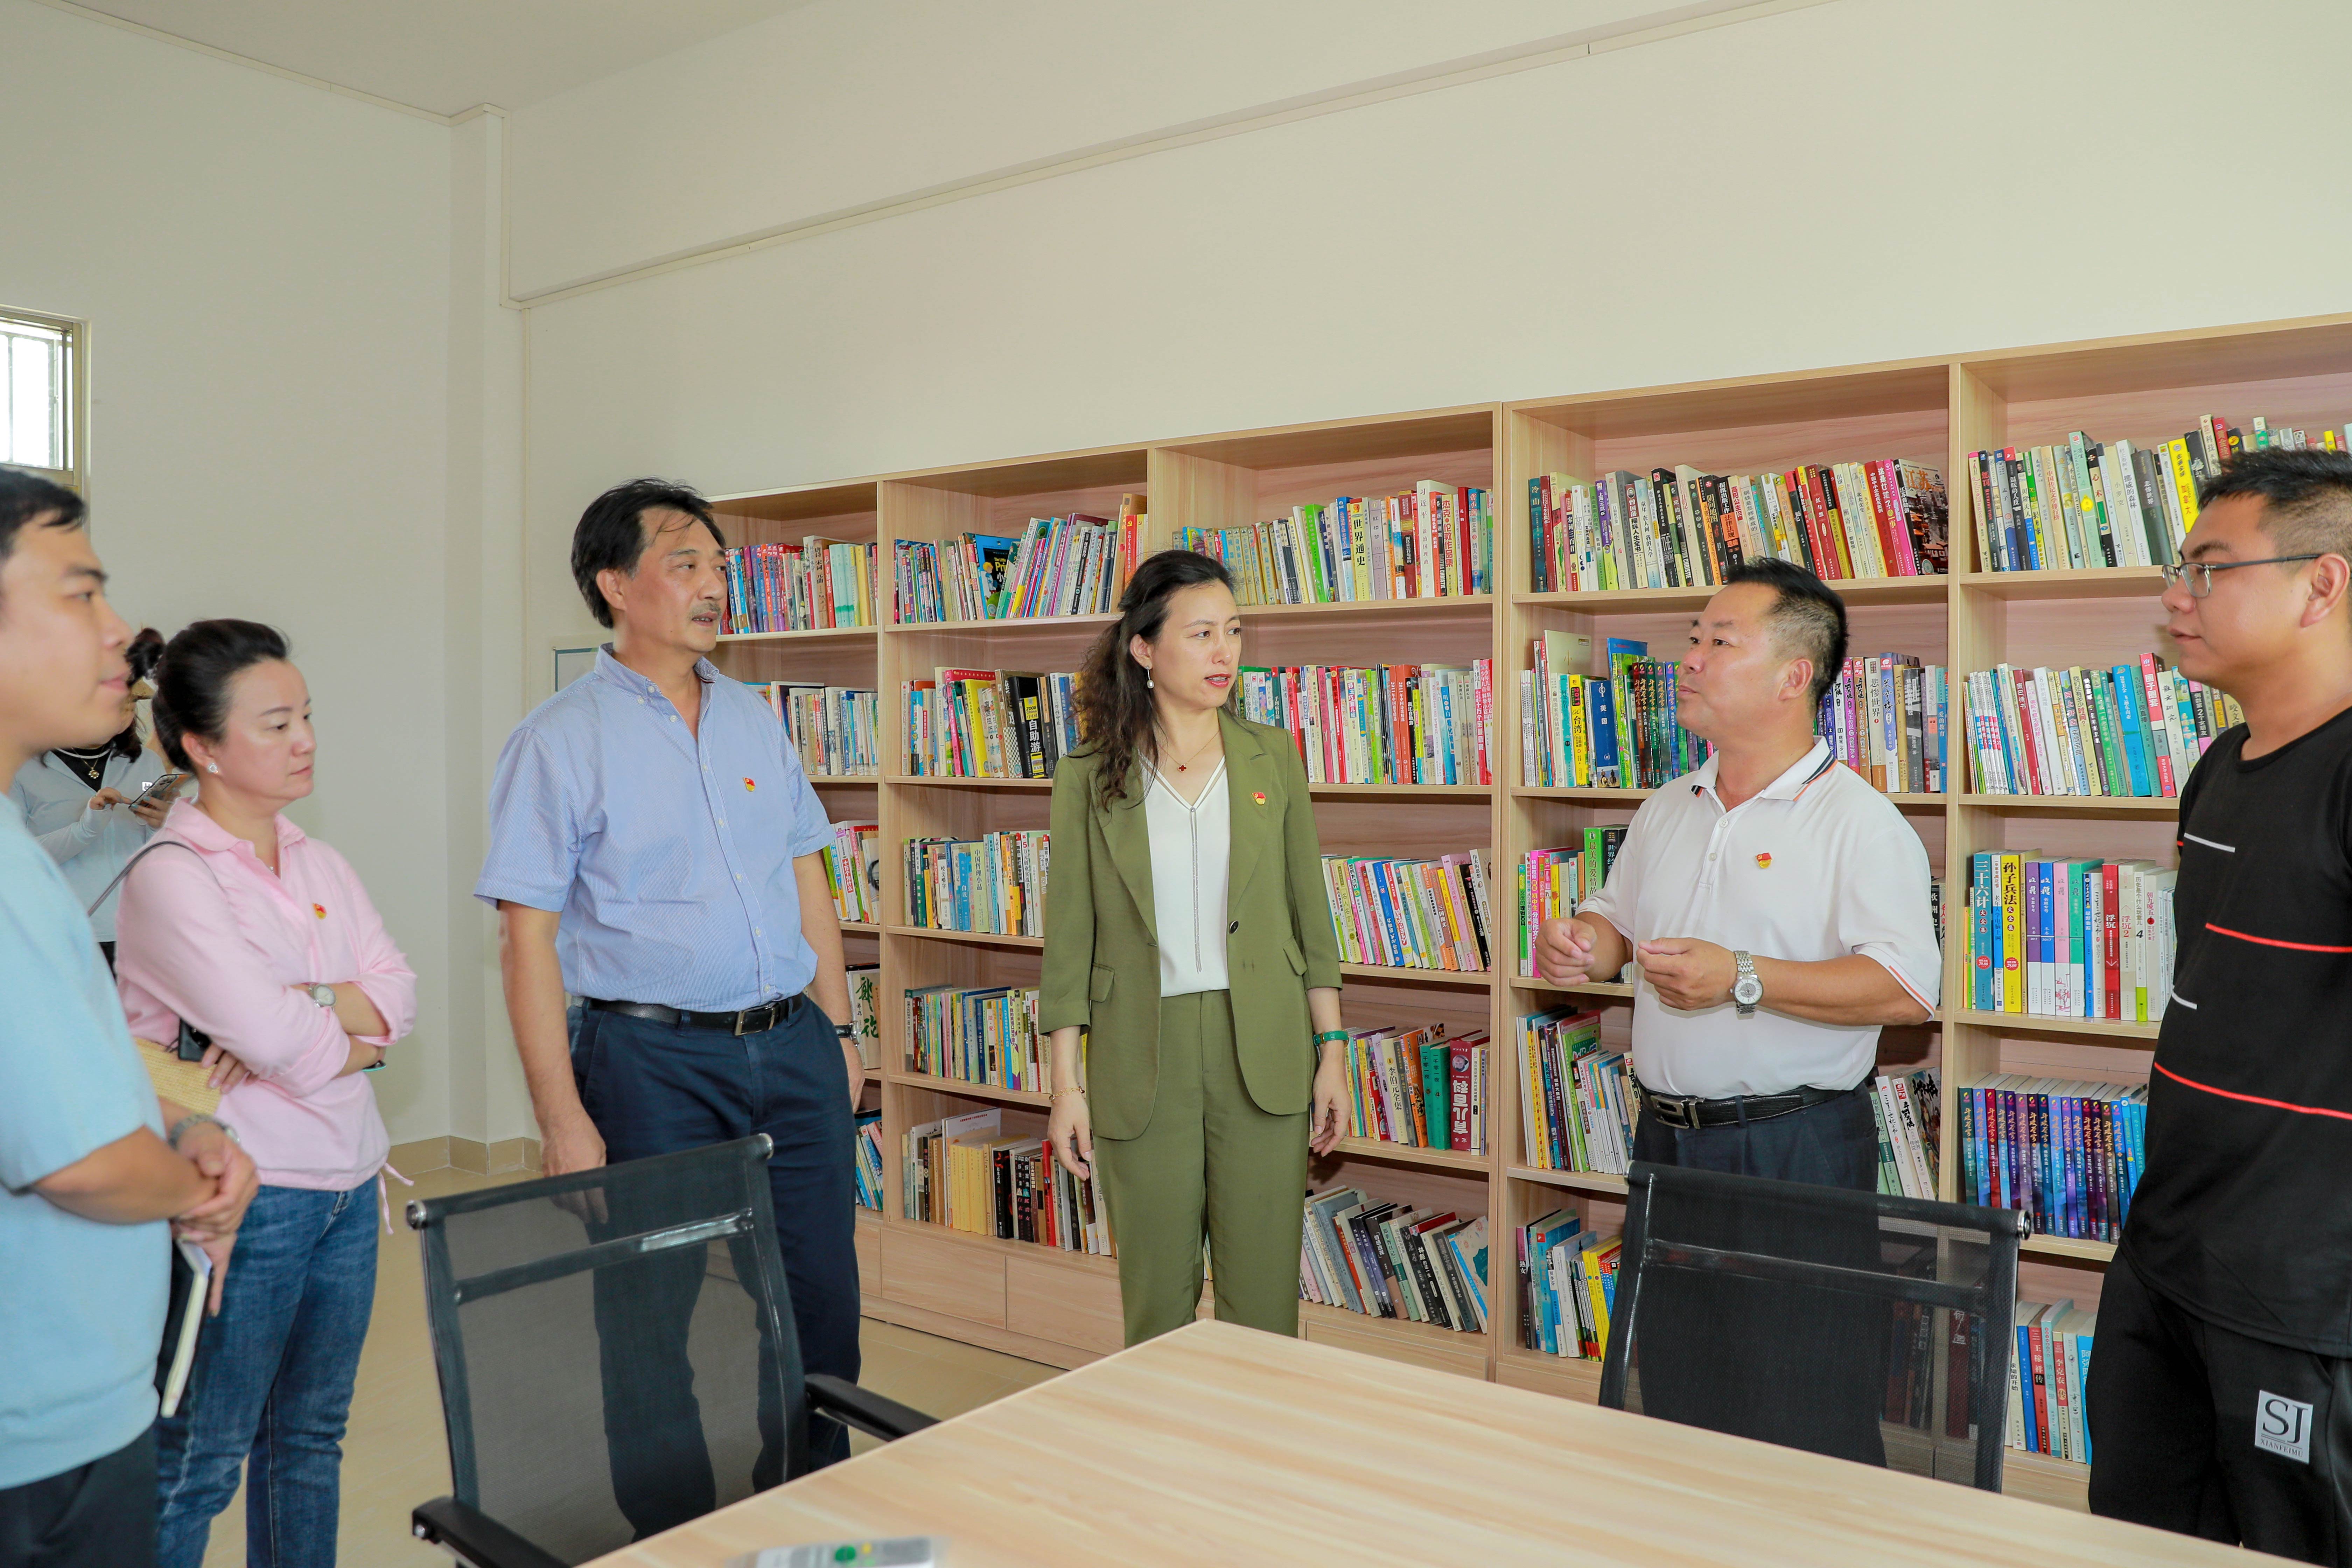 深圳市华侨公益基金会向乌石村村民活动中心捐赠图书